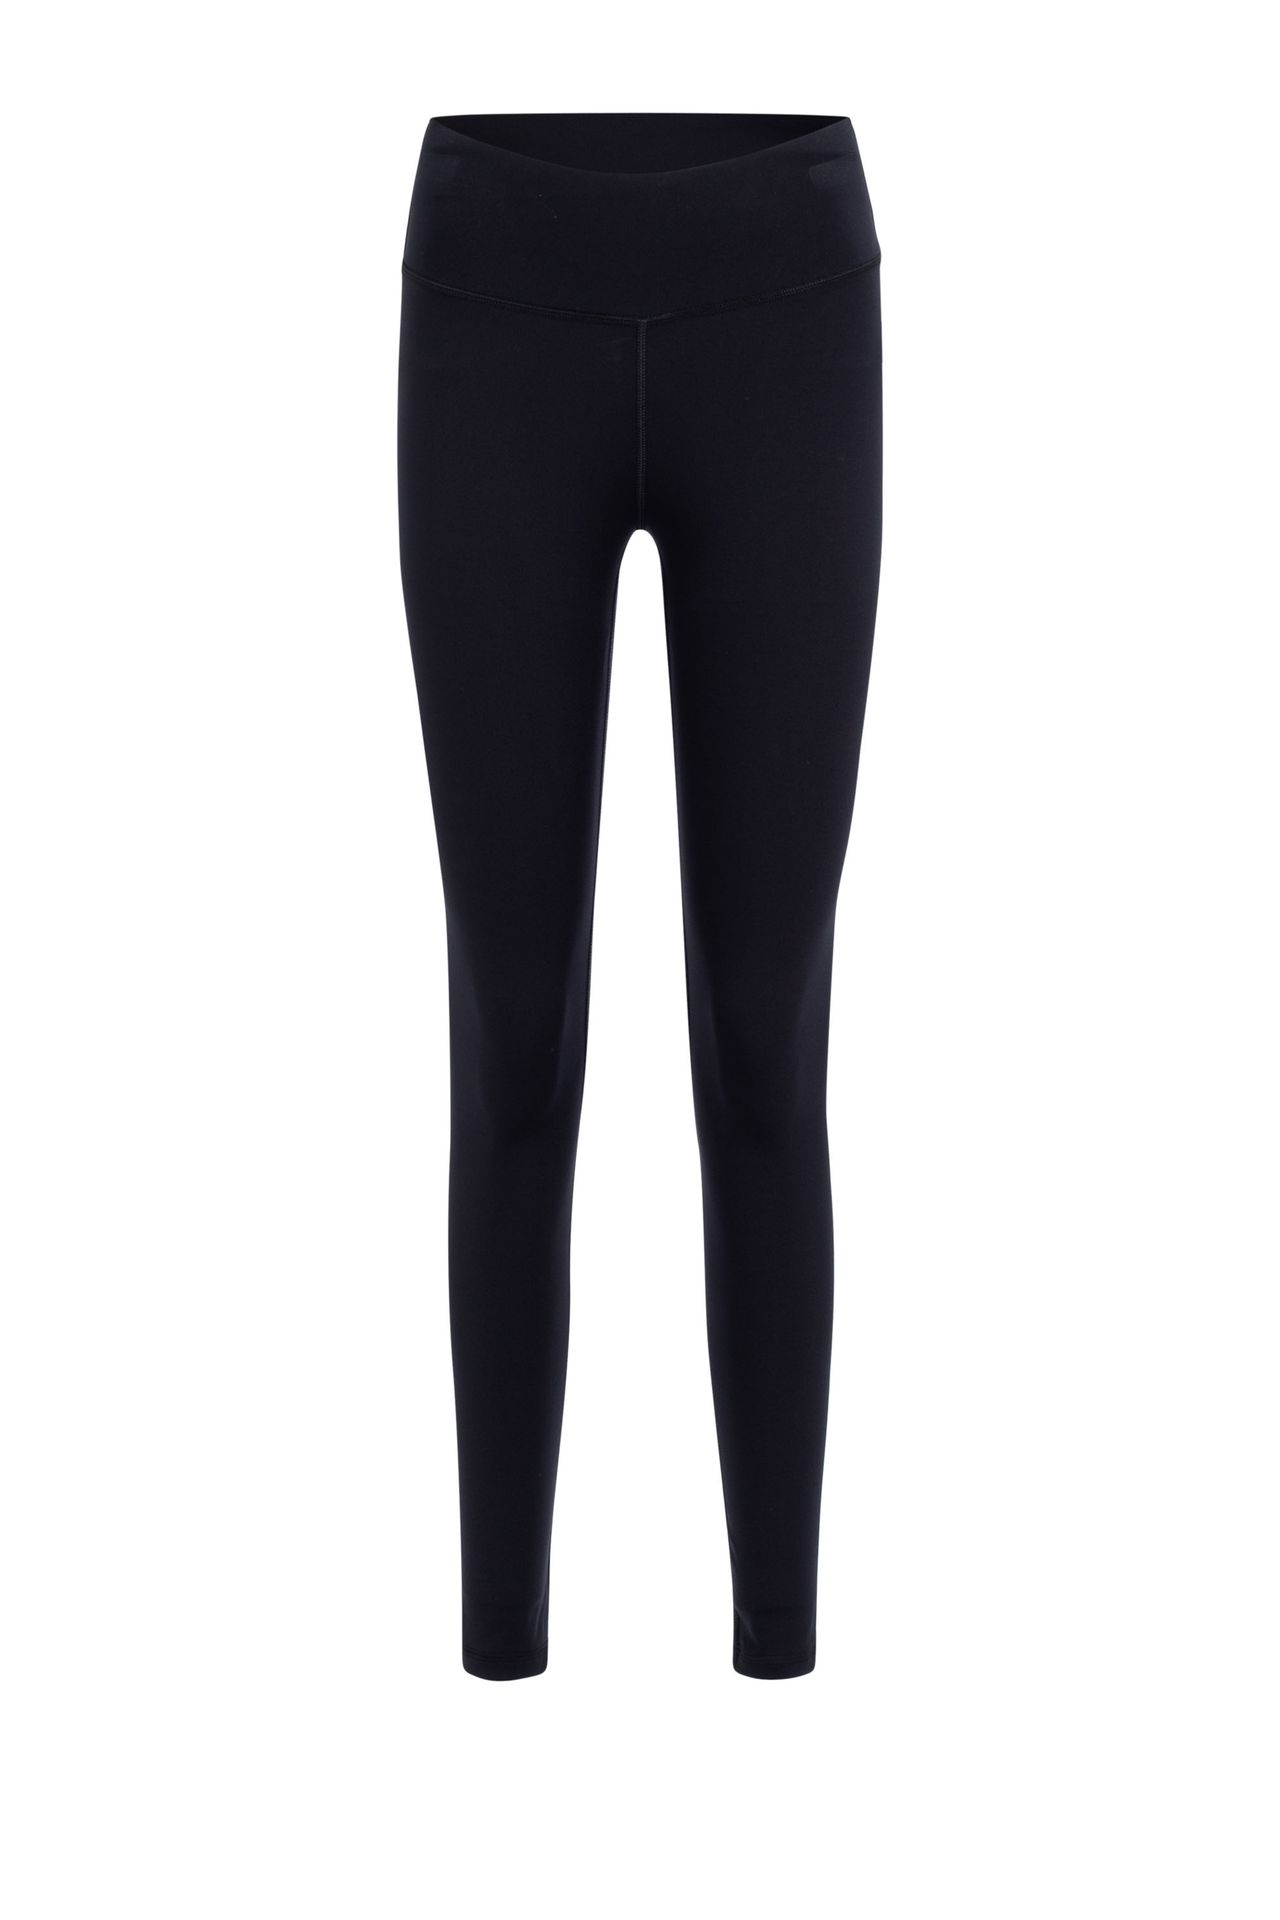 Norah Legging - Activewear black 210945-001